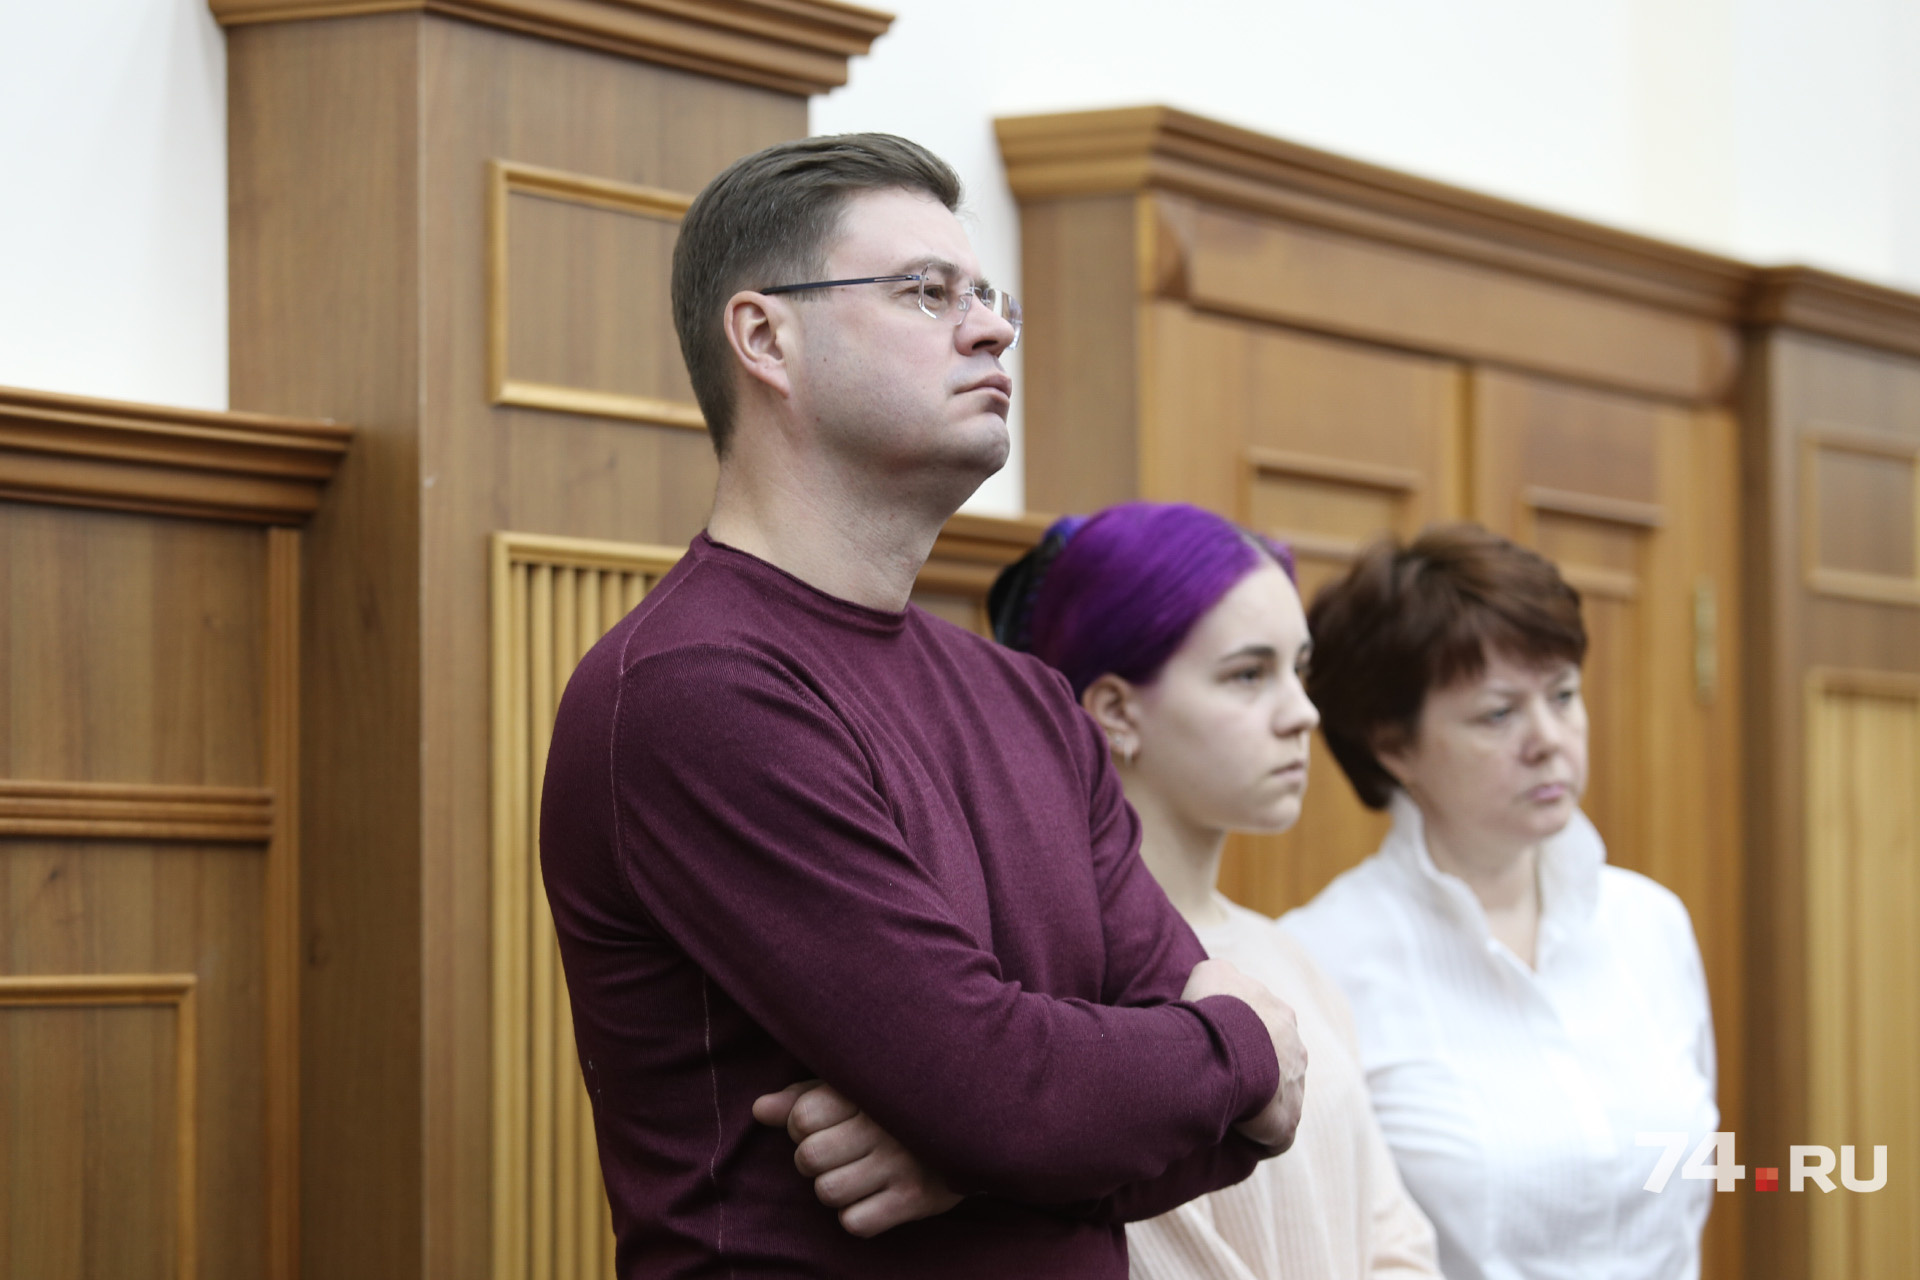 Муж убитой заявил иск о компенсации морального вреда на 20 миллионов рублей